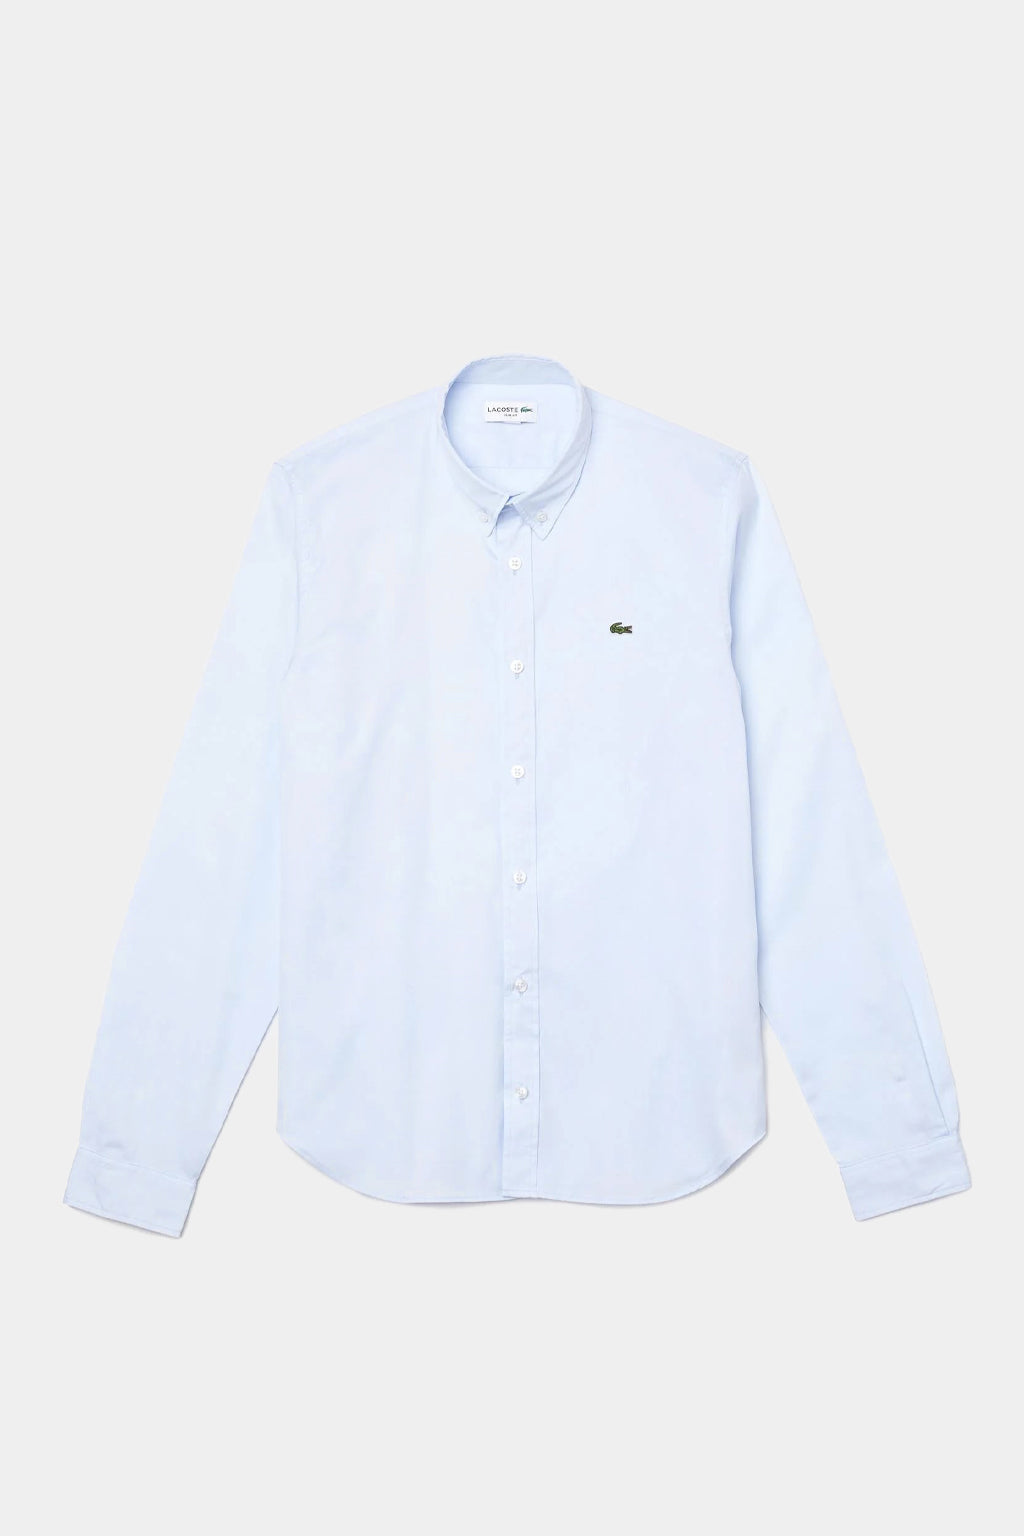 Lacoste - Men’s Slim Fit Premium Cotton Shirt